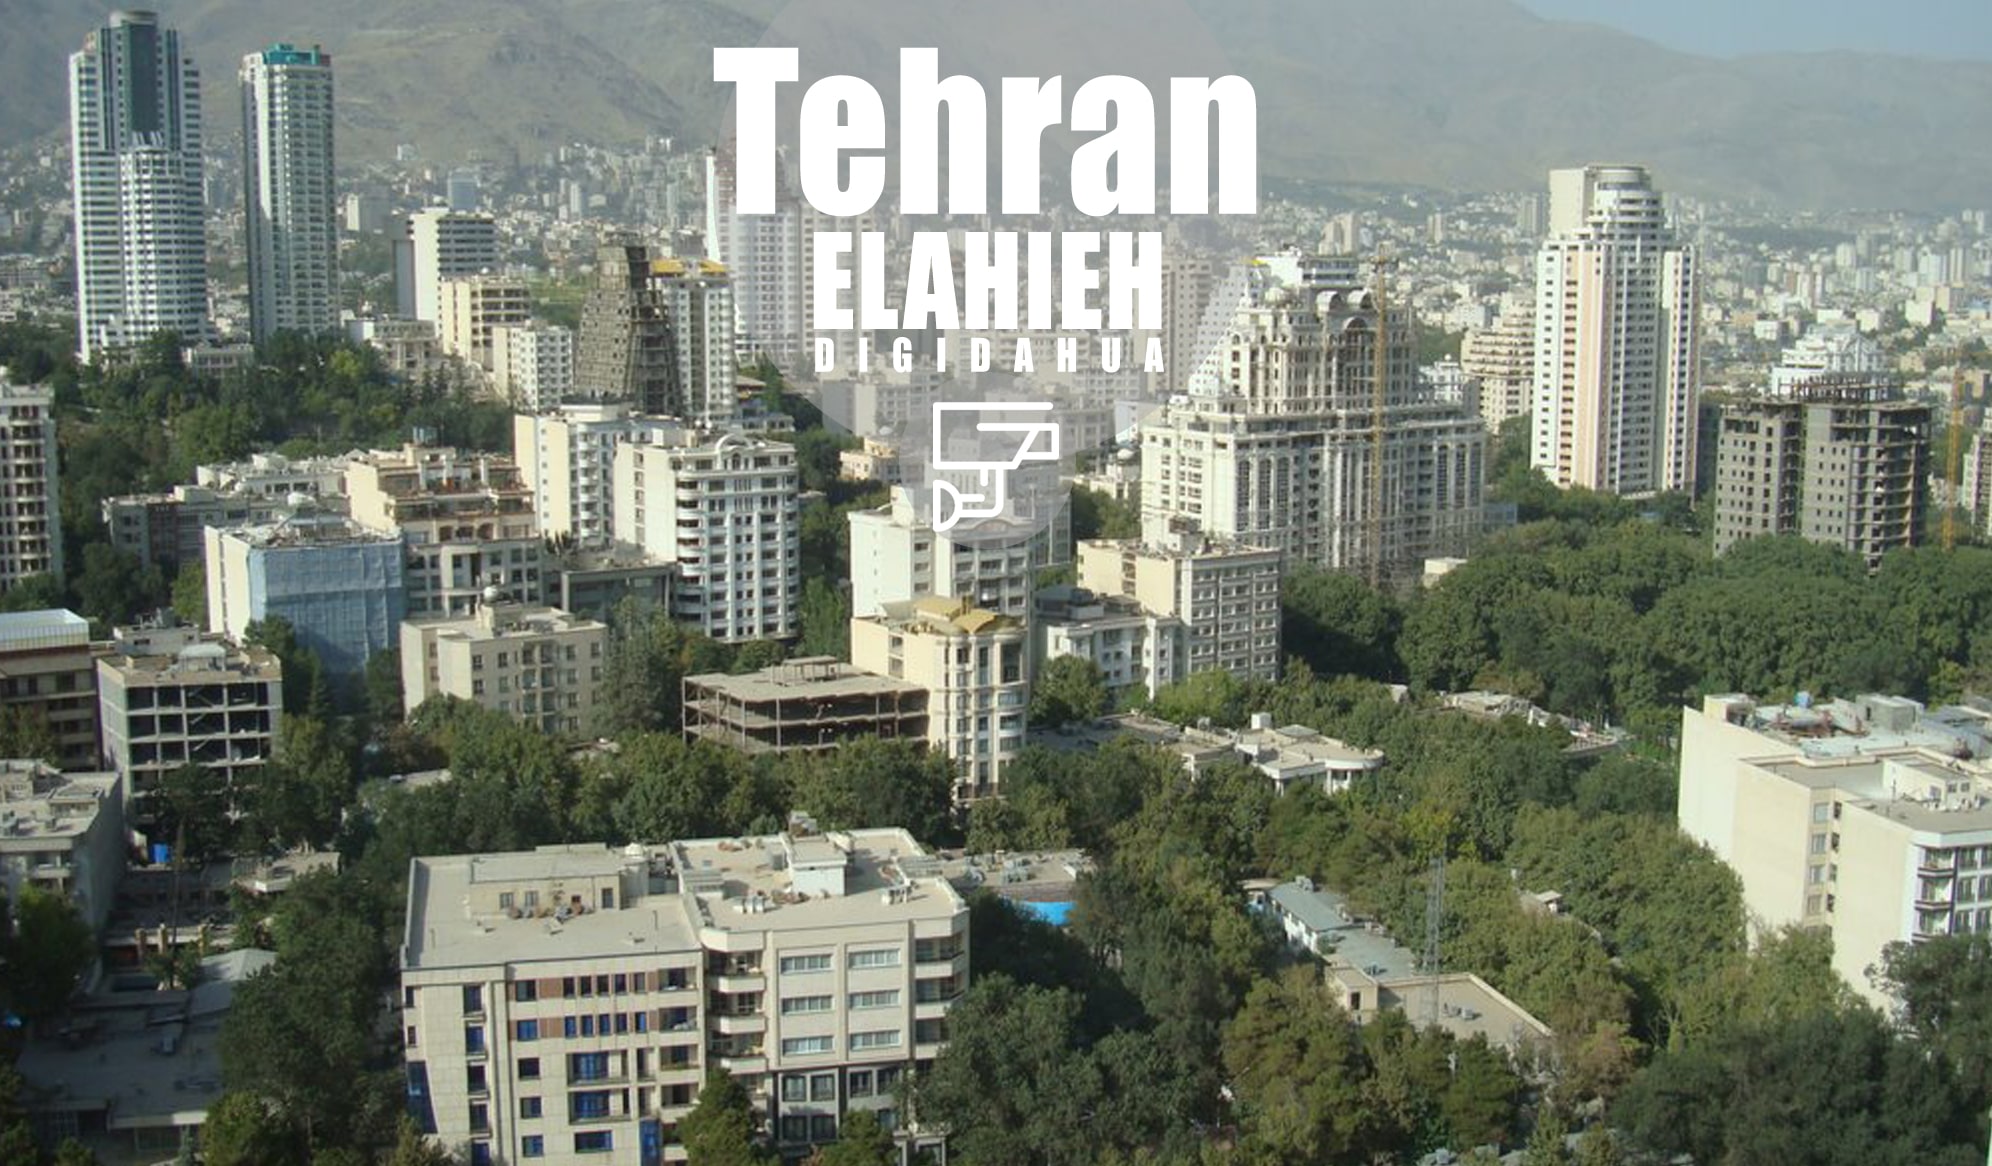 نصب دوربین مداربسته در الهیه تهران